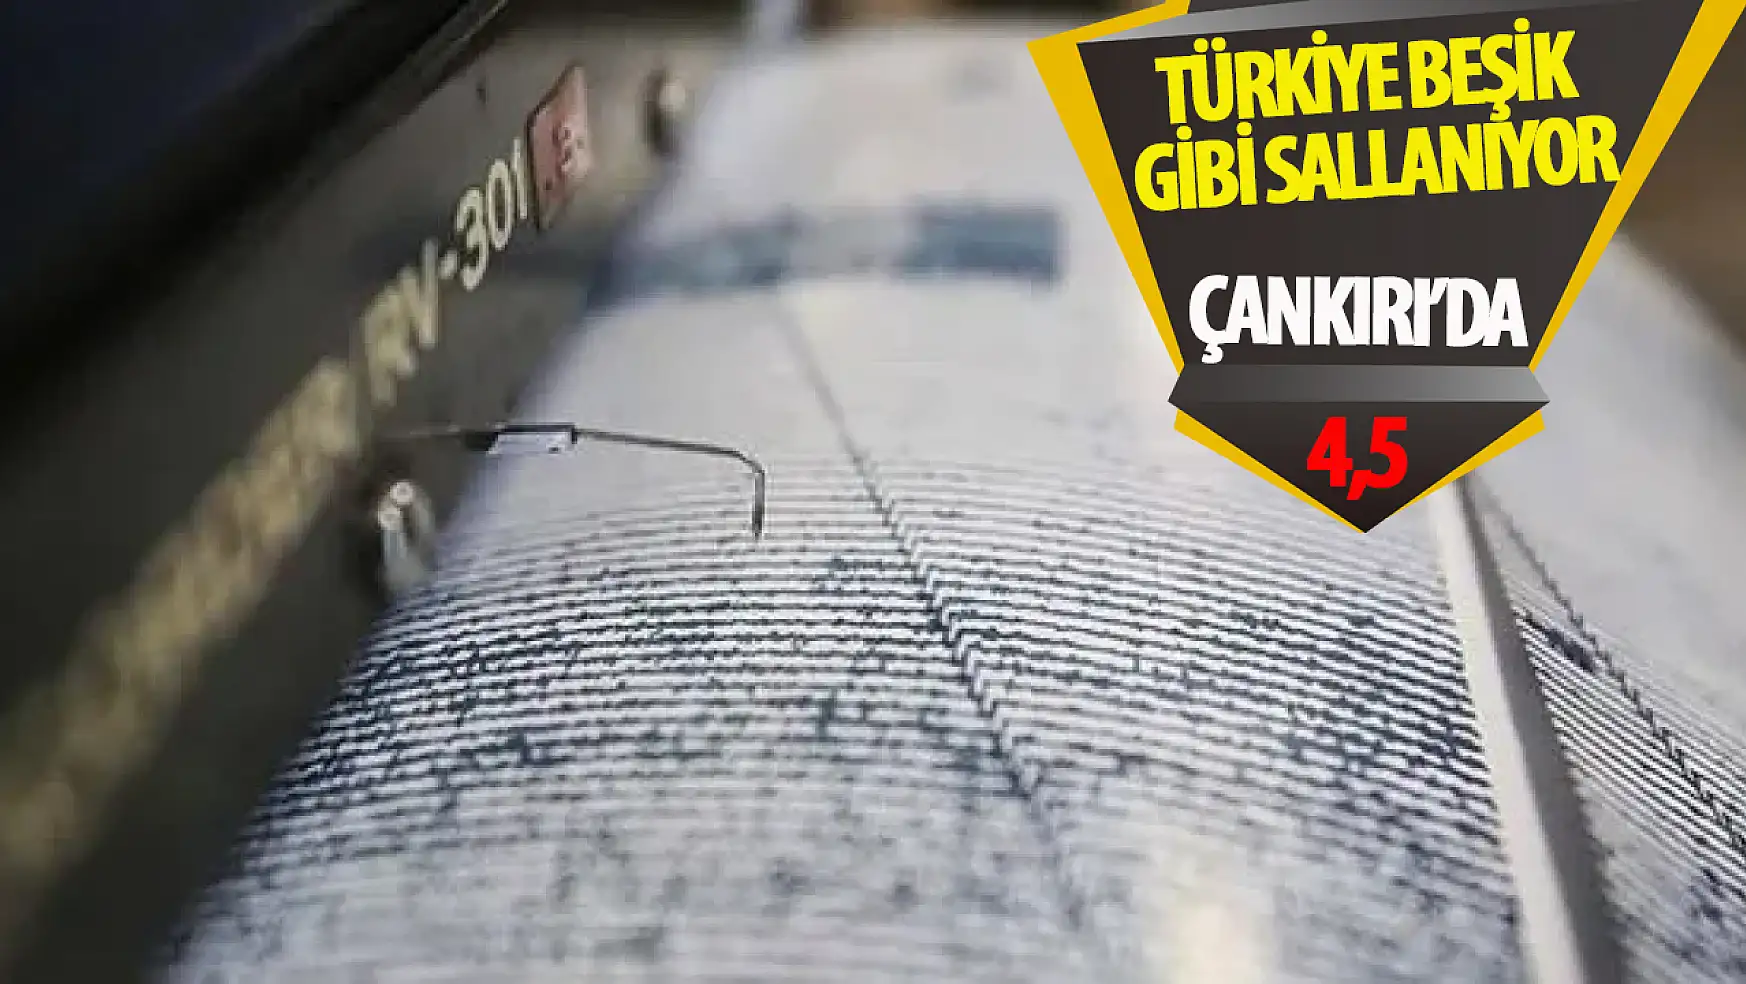 Türkiye beşik gibi sallanıyor: Deprem haberi üst üste geliyor!